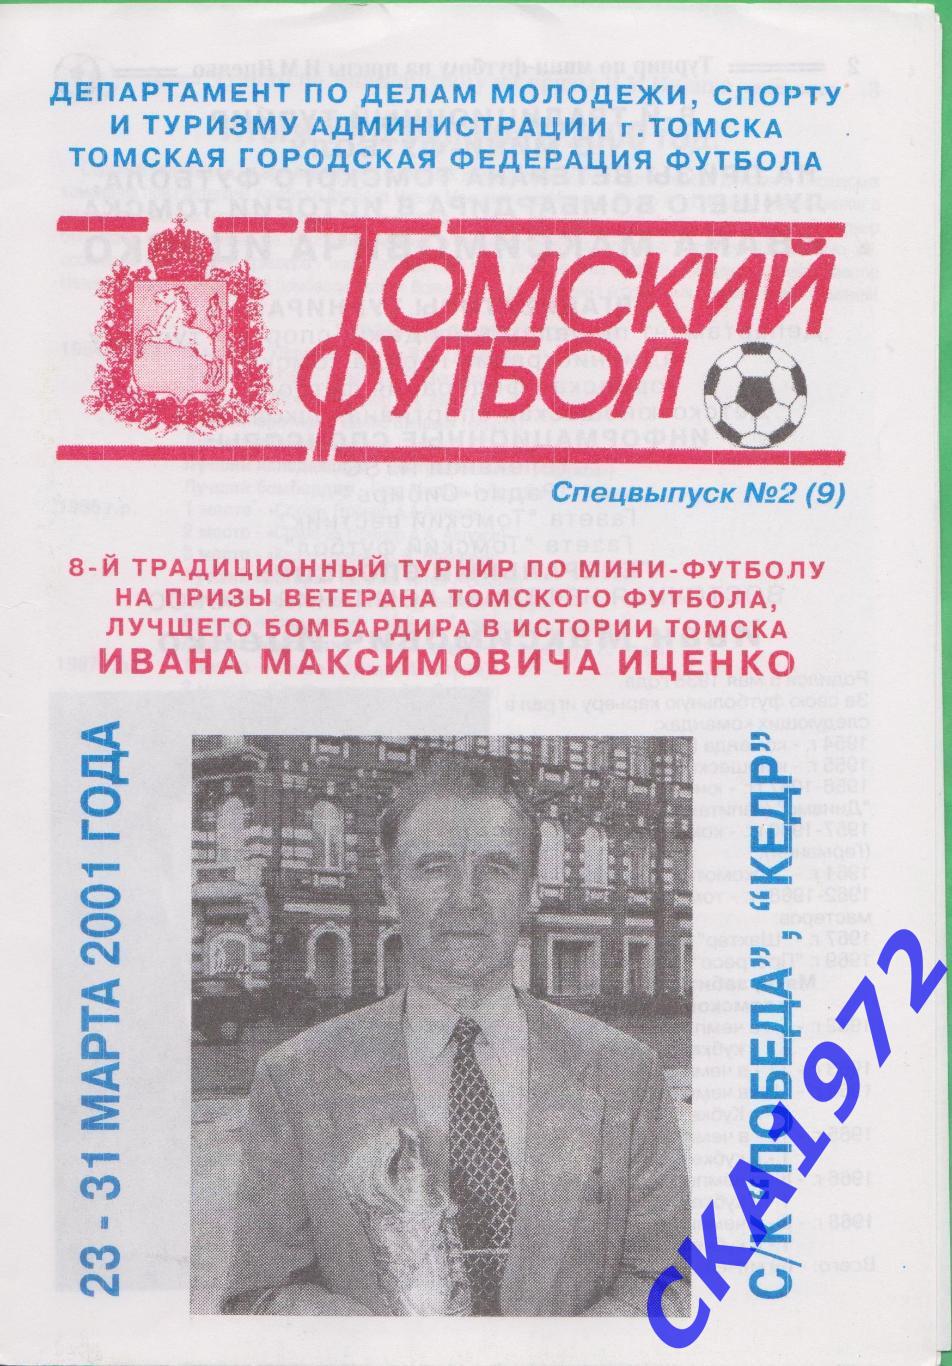 8 турнир по мини-футболу на призы Ивана Максимовича Иценко Томск 2001 +++